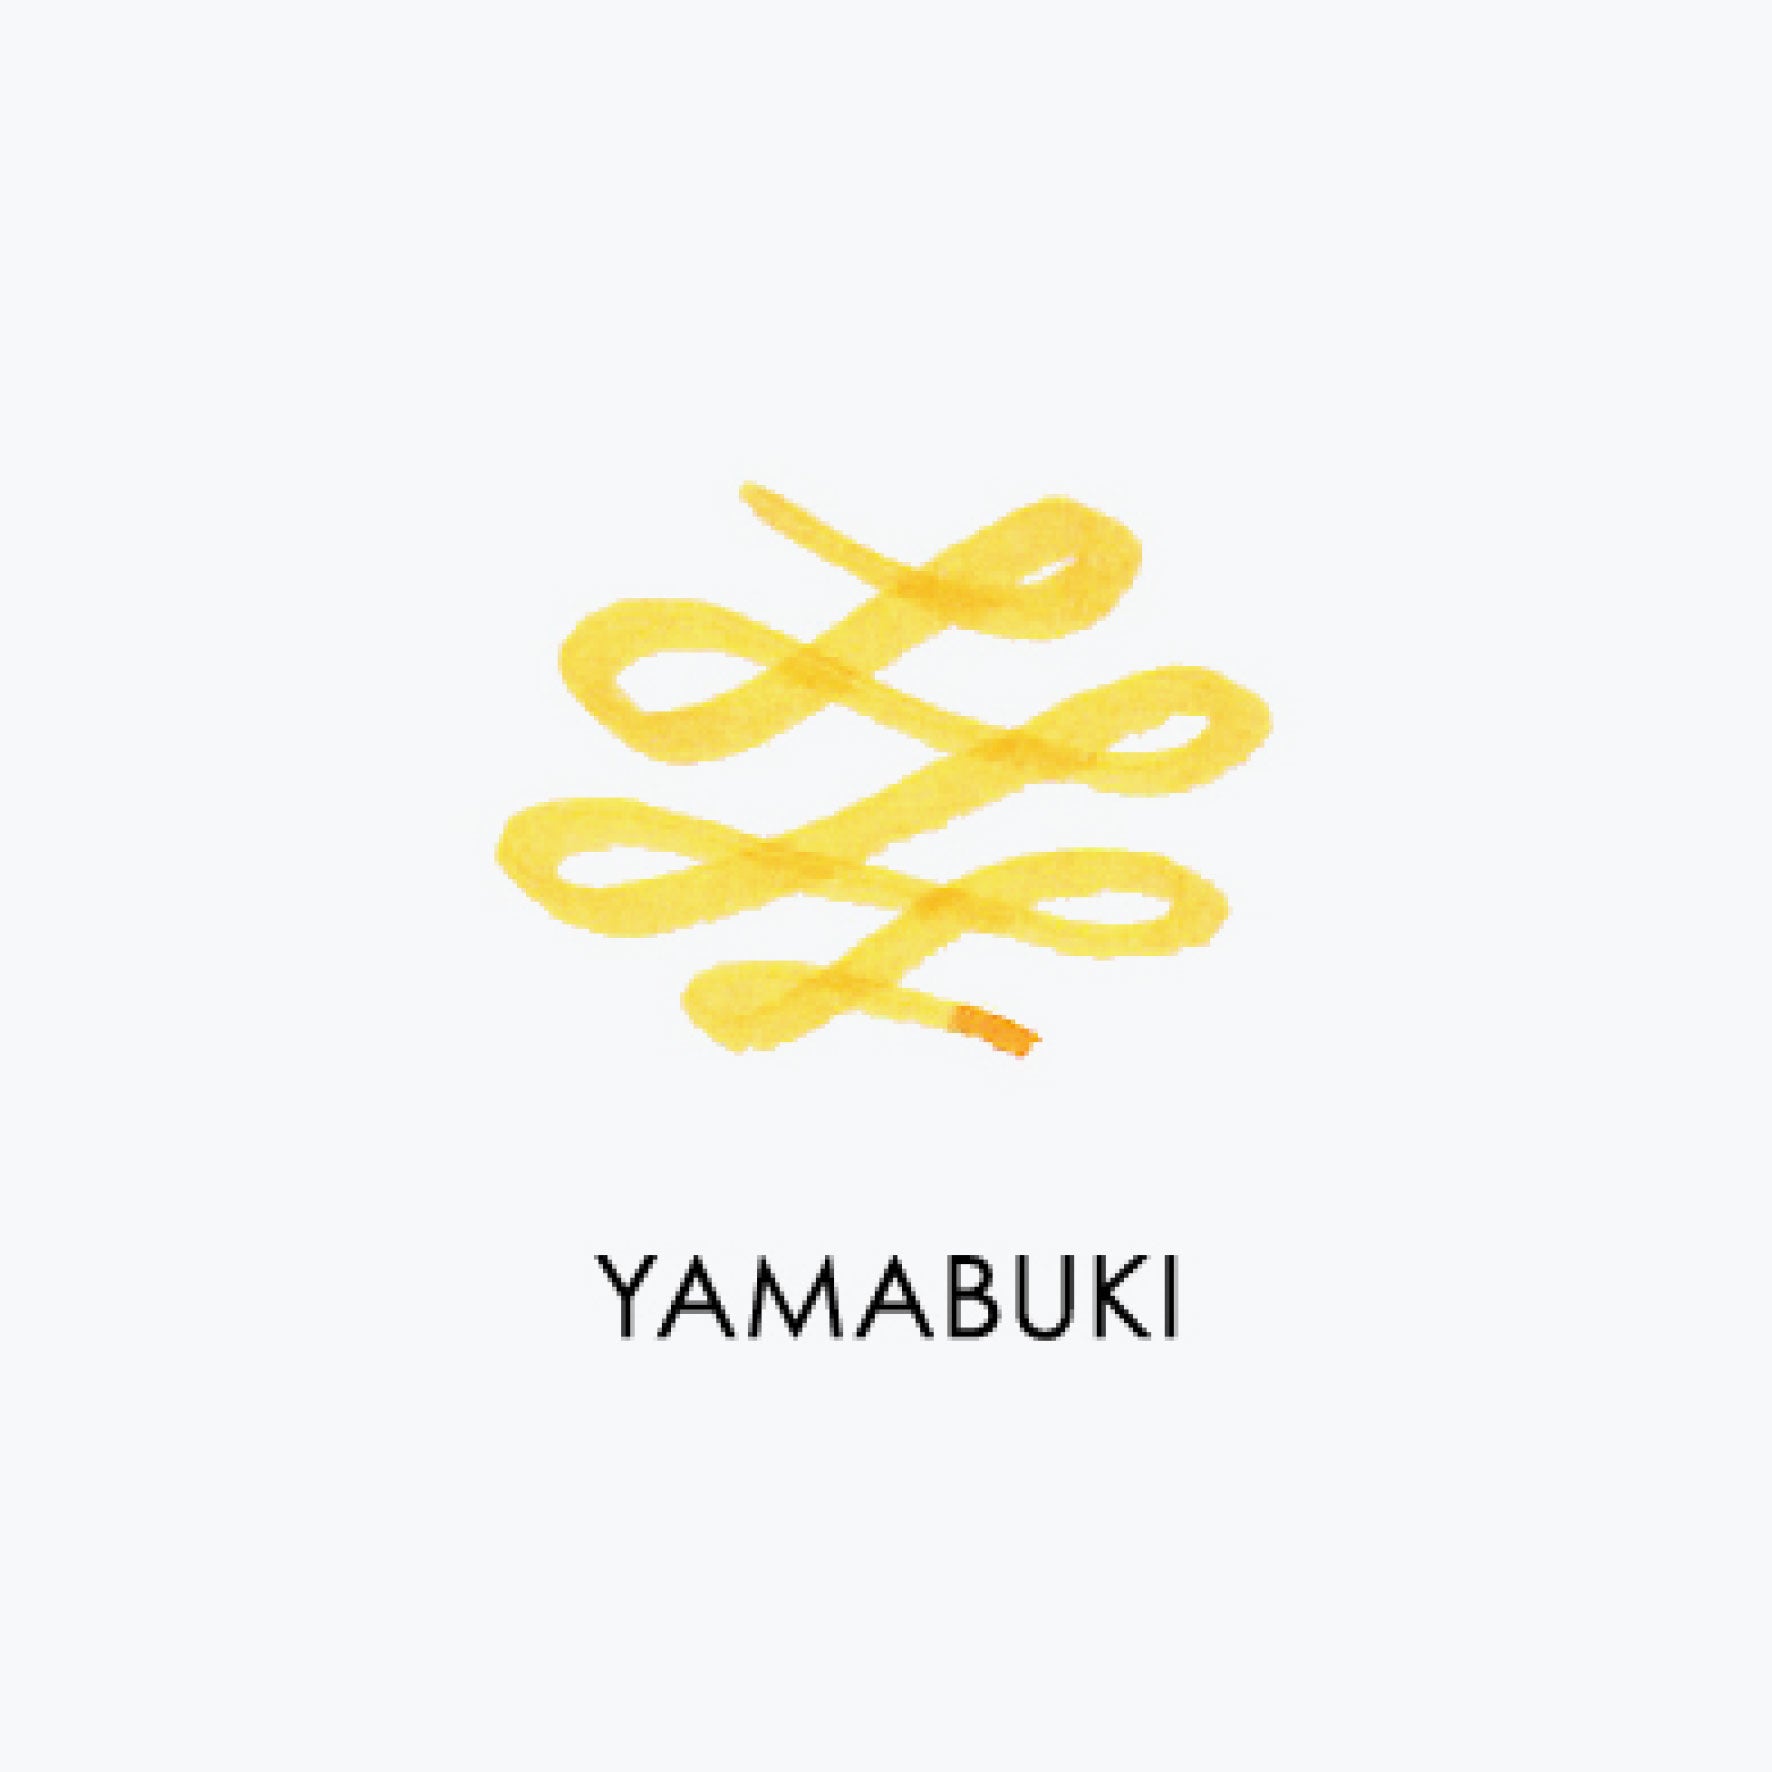 Manyo Yamabuki swatch by Sailor